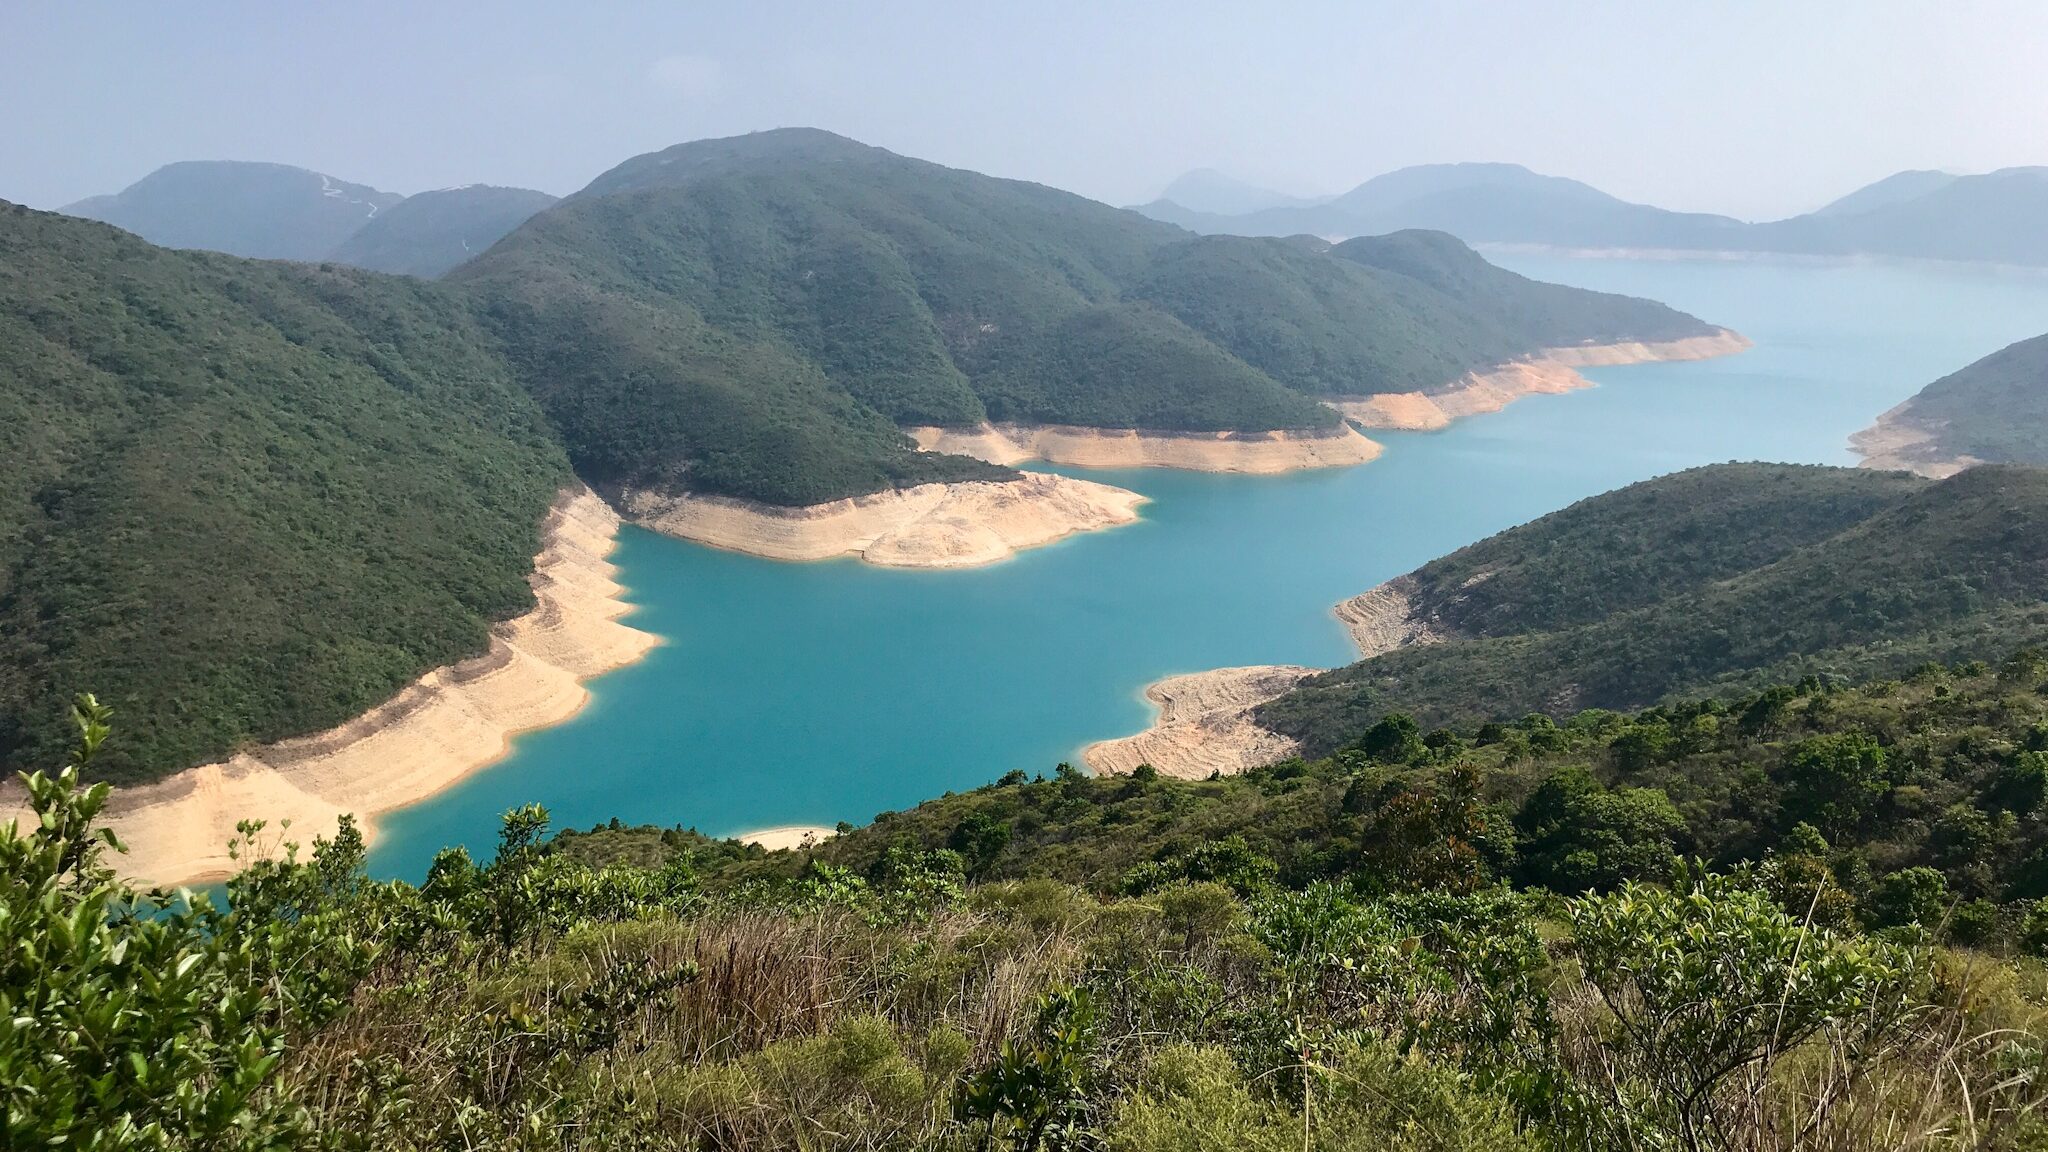 Hong Kong High Island Reservoir